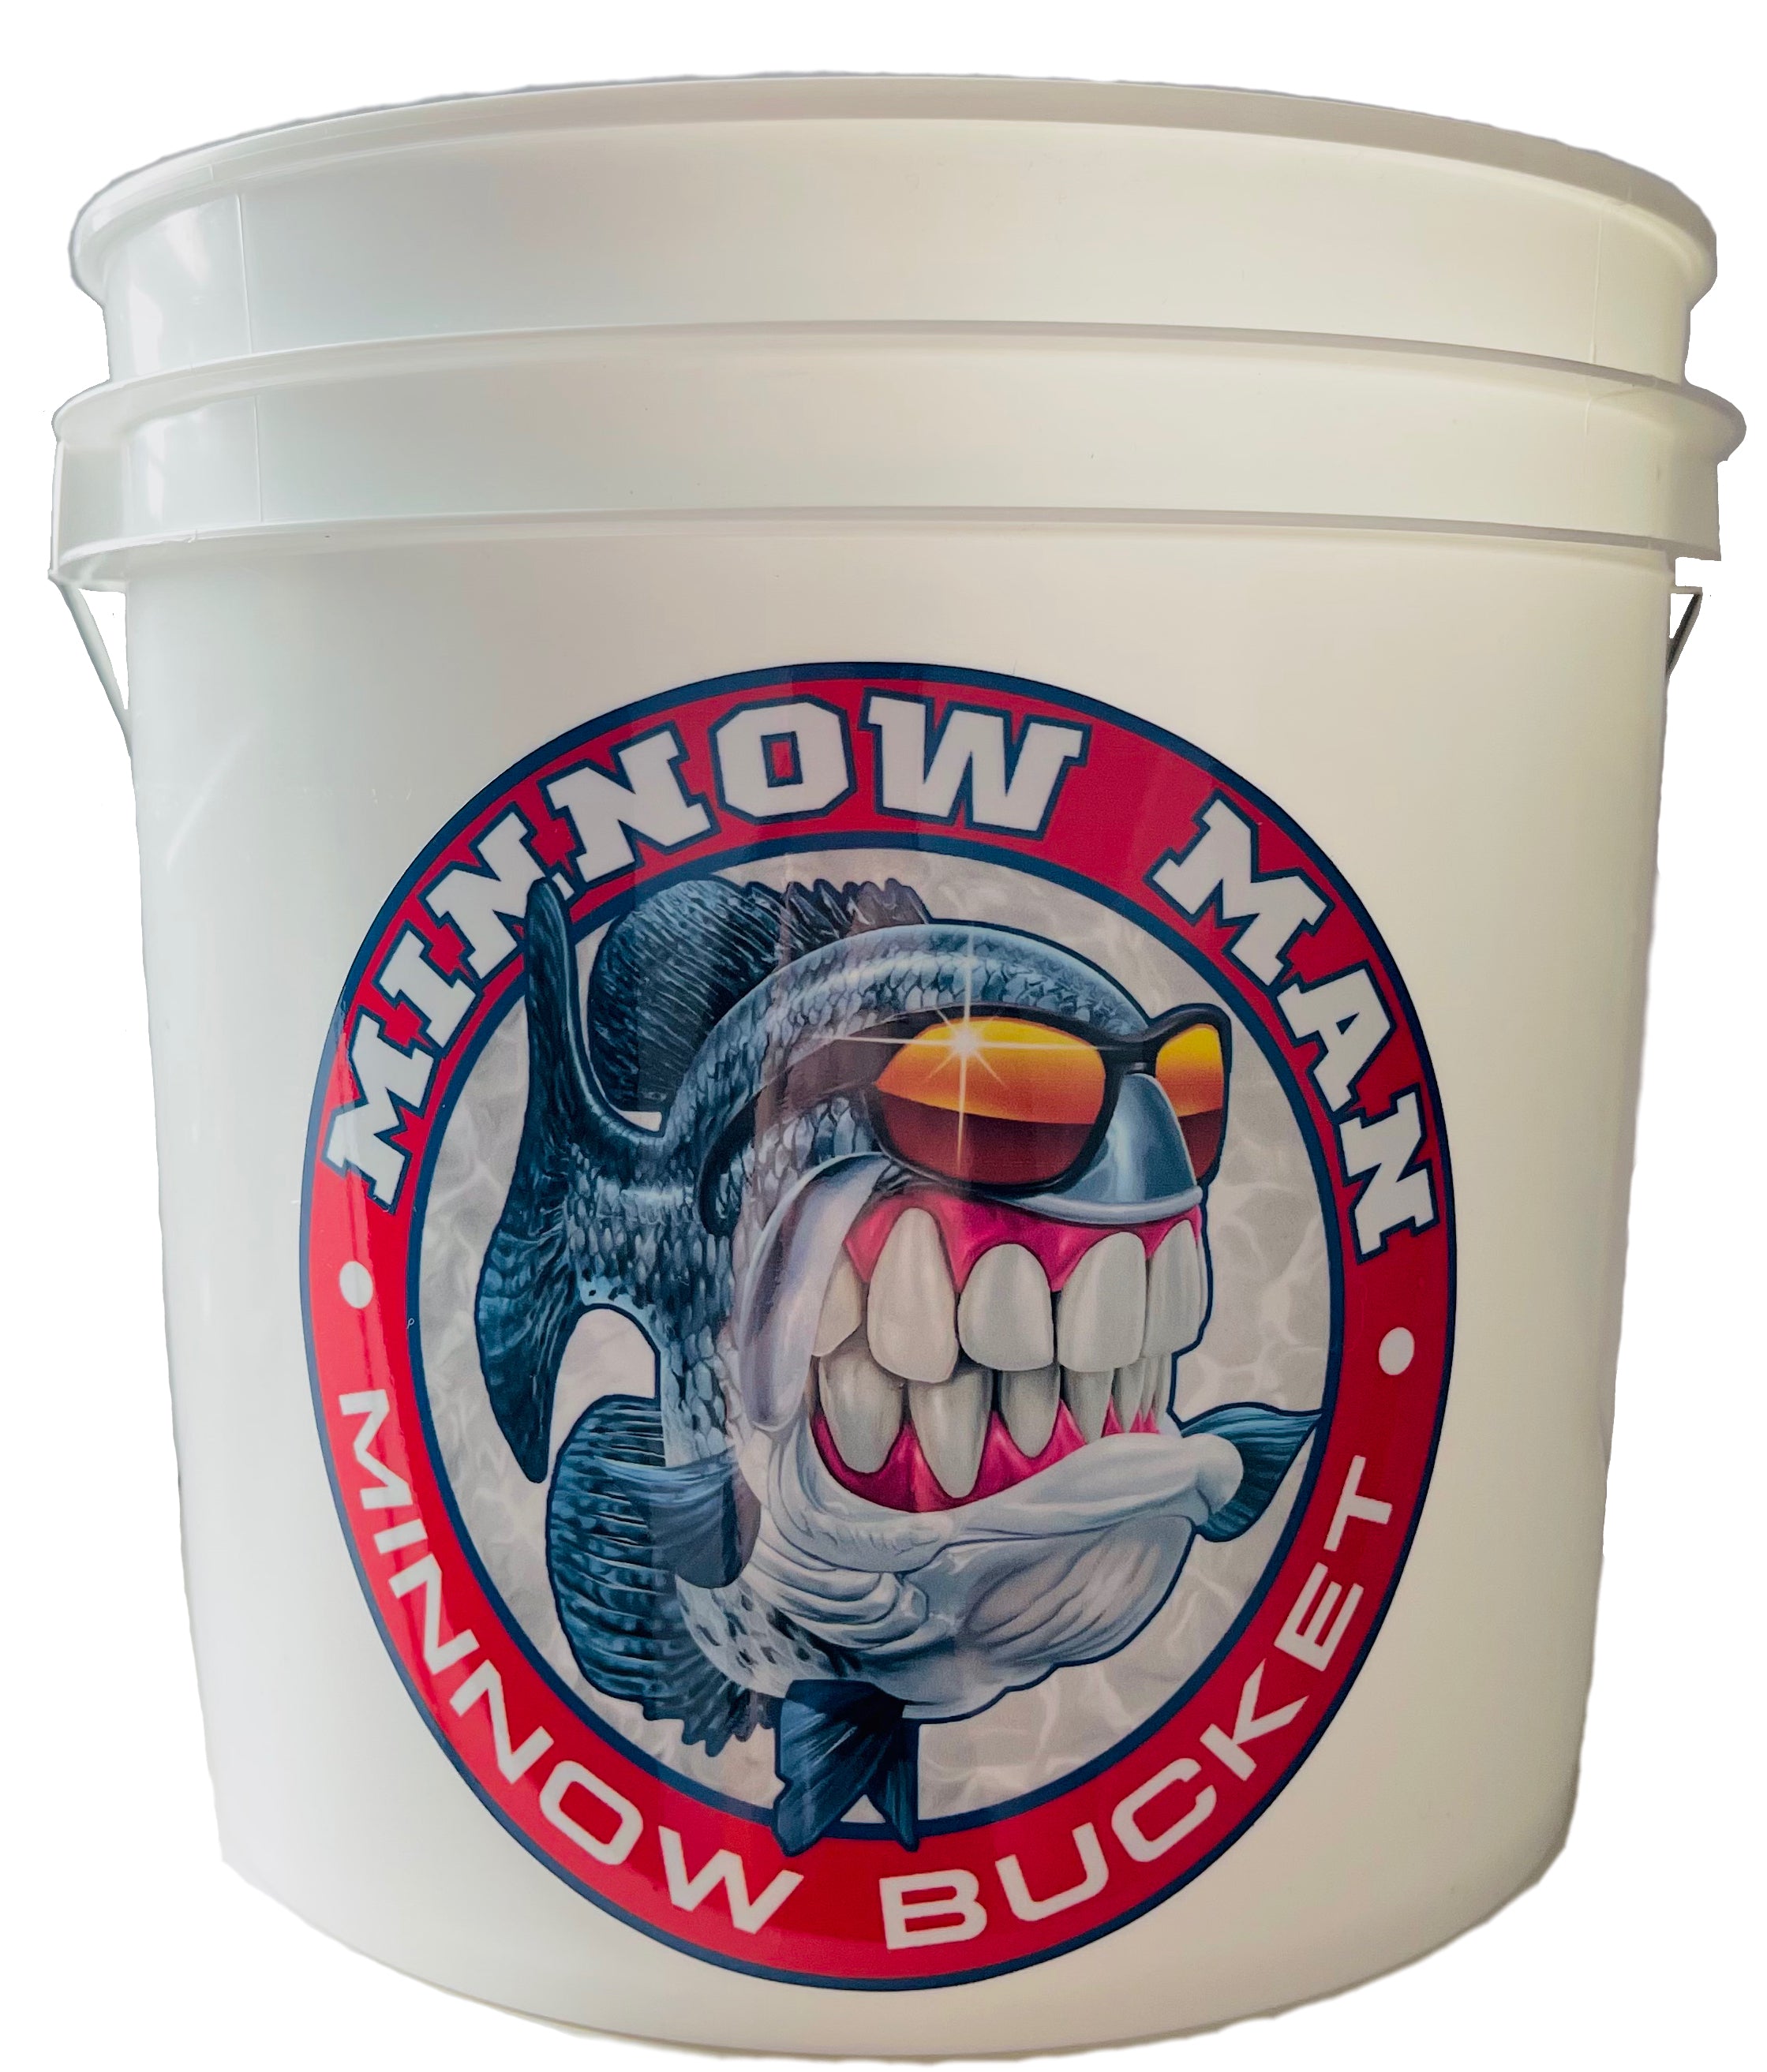 Mr. Crappie Minnow Man, Live Bait Bucket, Insulated minnow bucket